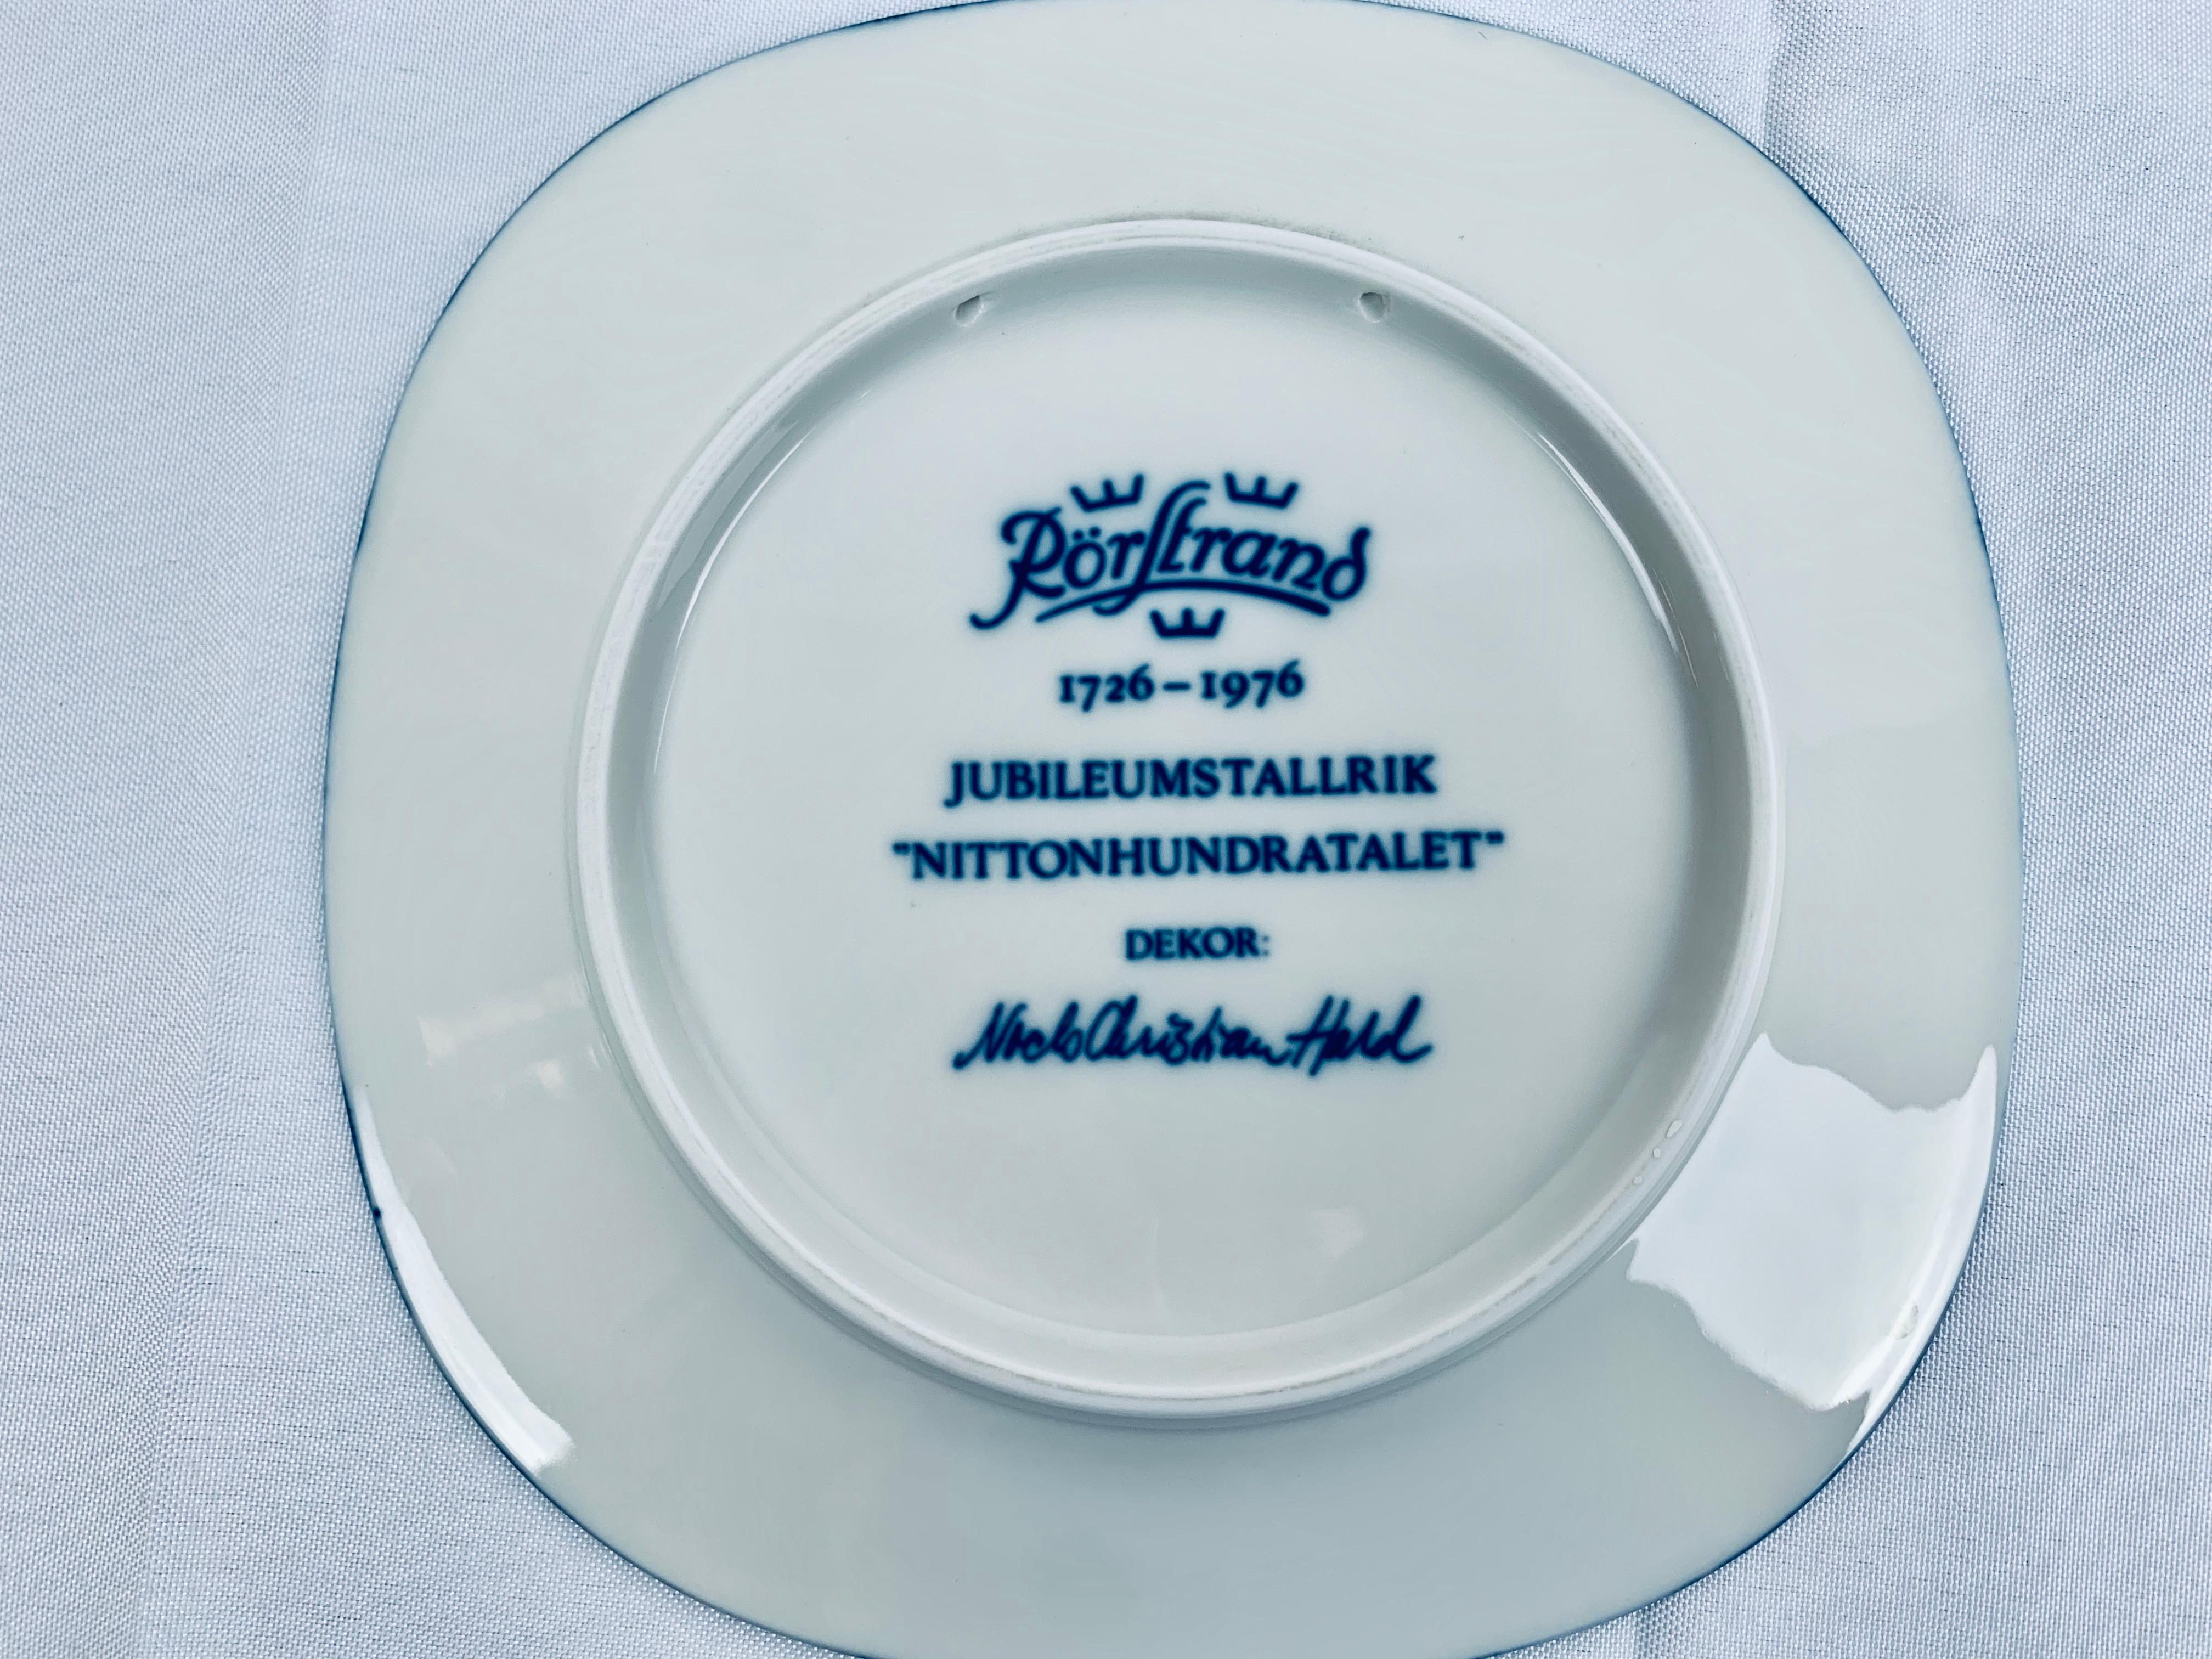 Rörstrand Porcelain Commemorative Plates-Niels-Christian Hald in Blue, Sweden 1